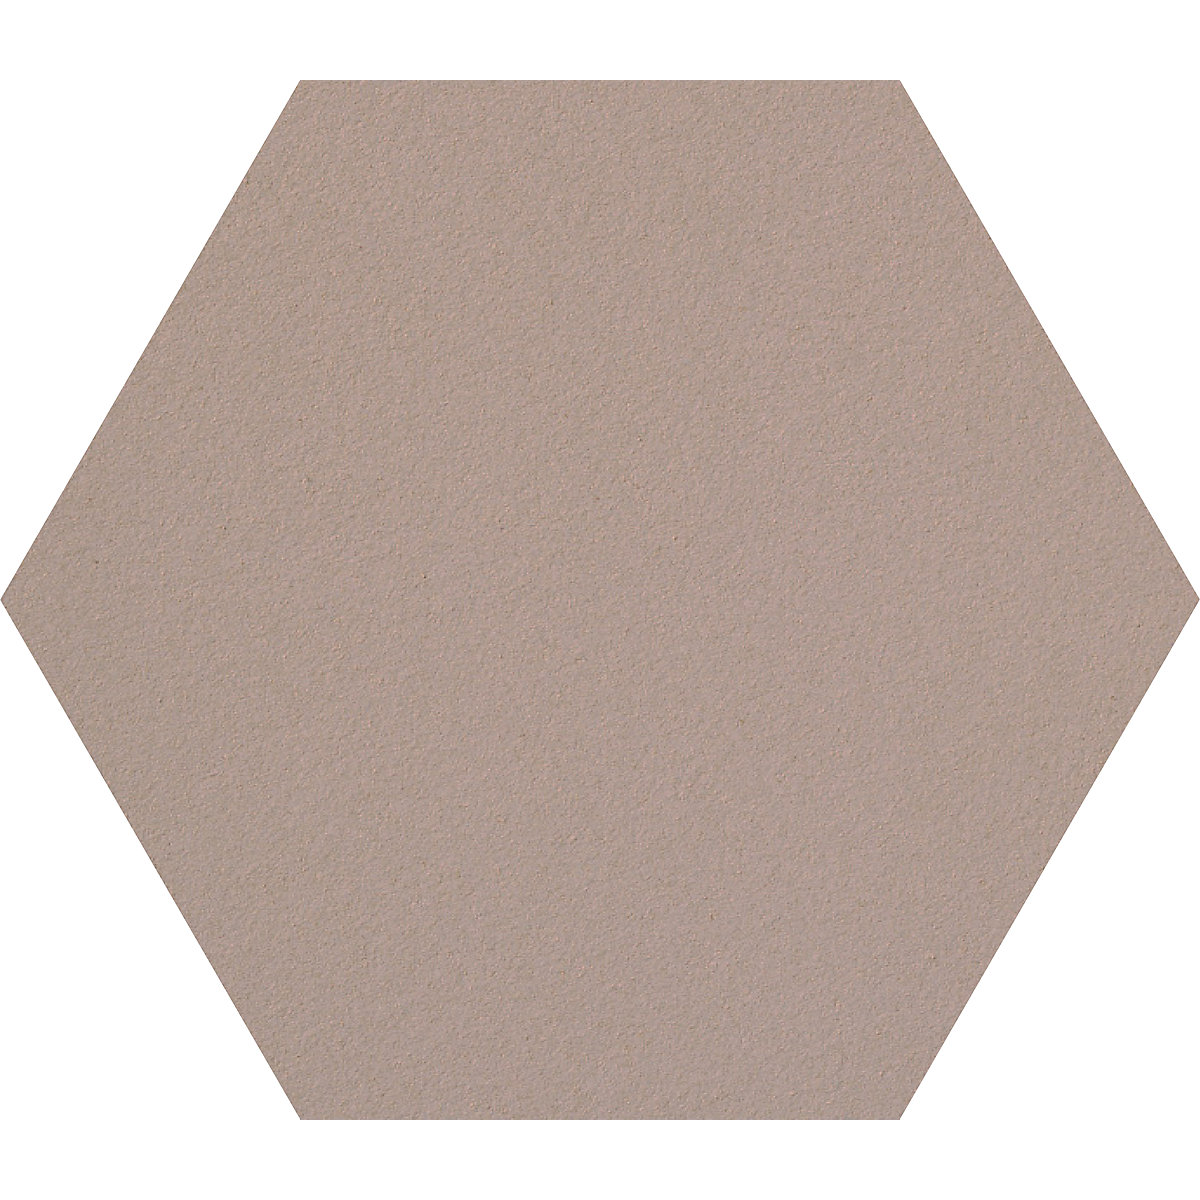 Tableau à épingles design hexagonal – Chameleon, liège, l x h 600 x 600 mm, sable-36